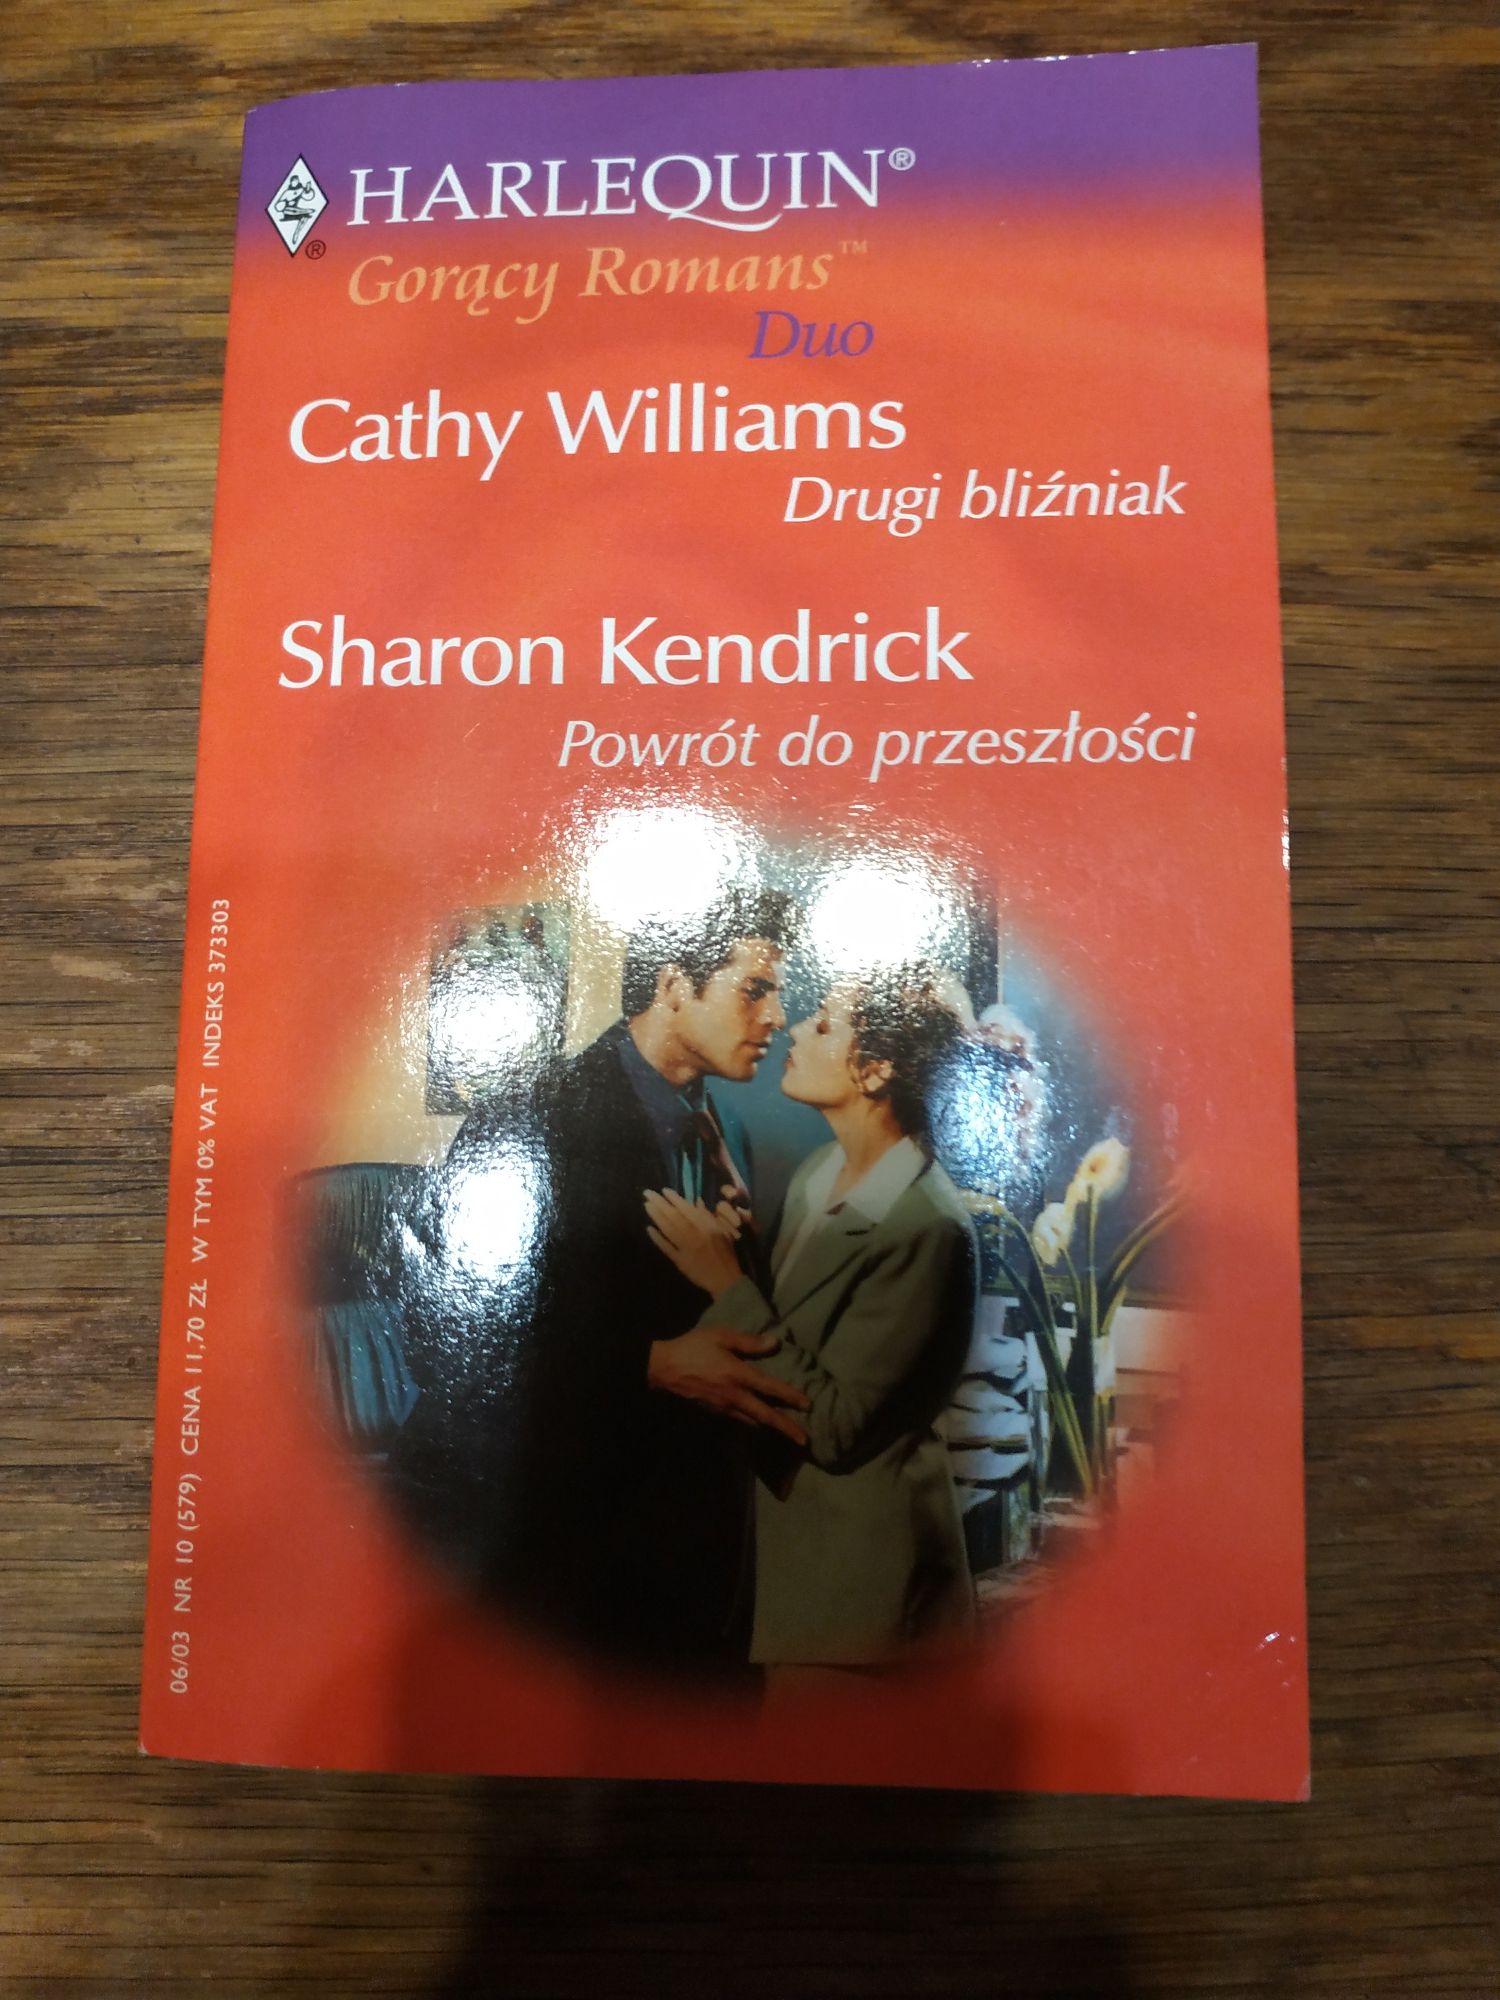 Drugi bliźniak Cathy Williams, Powrót do przeszłości Sharon Kendrick